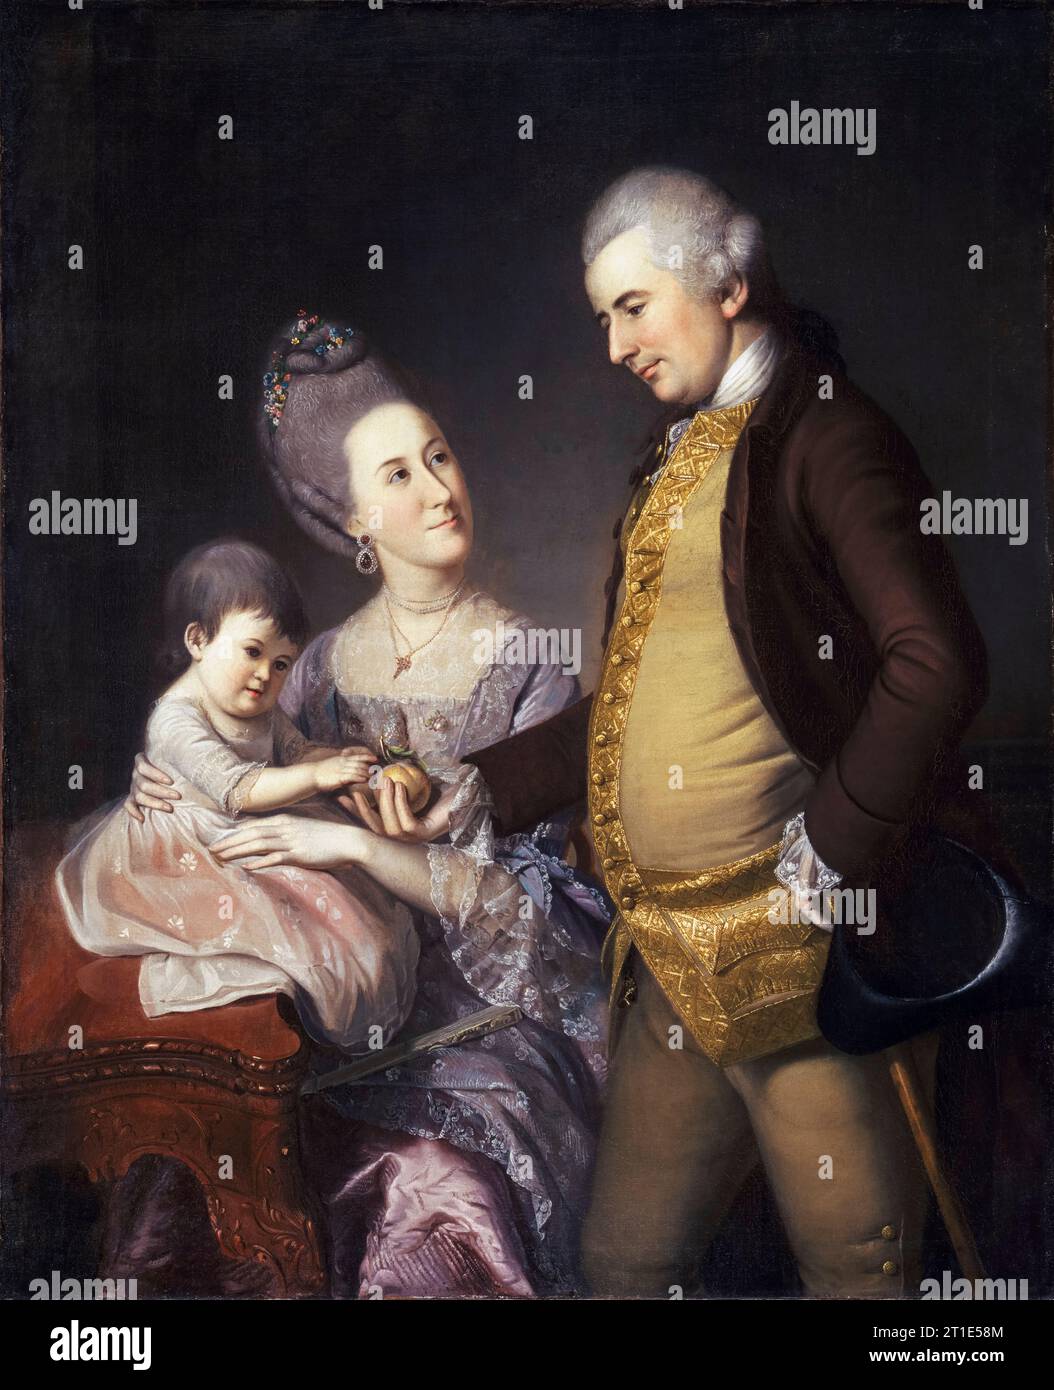 Porträt von John Cadwalader (1742–1786), US-amerikanischem Militärkommandeur, seiner Frau Elizabeth Lloyd Cadwalader und ihrer Tochter Anne, Gemälde in Öl auf Leinwand von Charles Willson Peale, 1772 Stockfoto